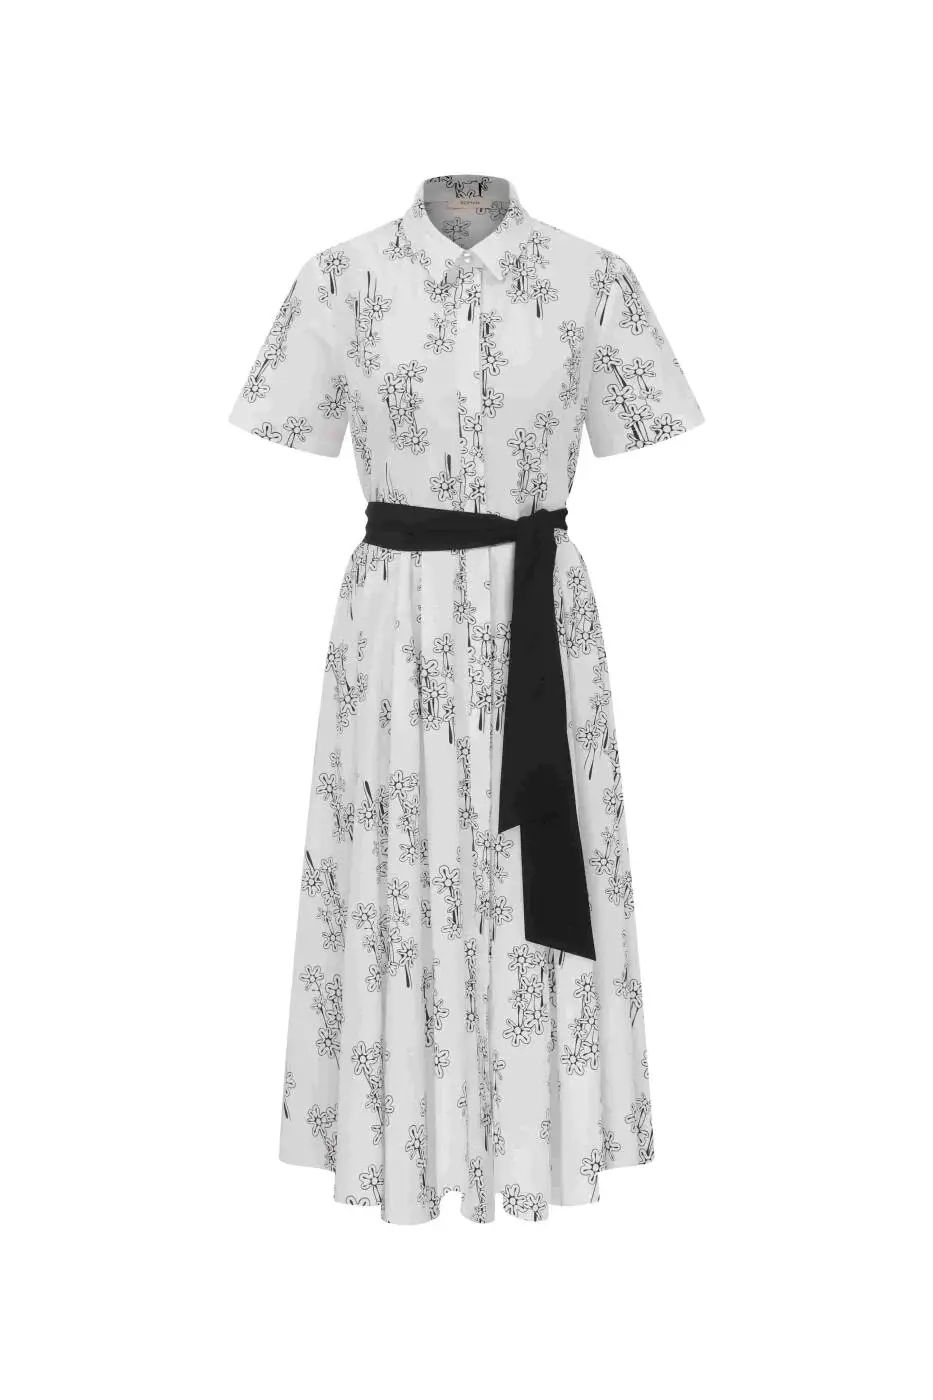 Roman Floral Slit Waist Belted Dress Black-White - 4 / Black-White. 1